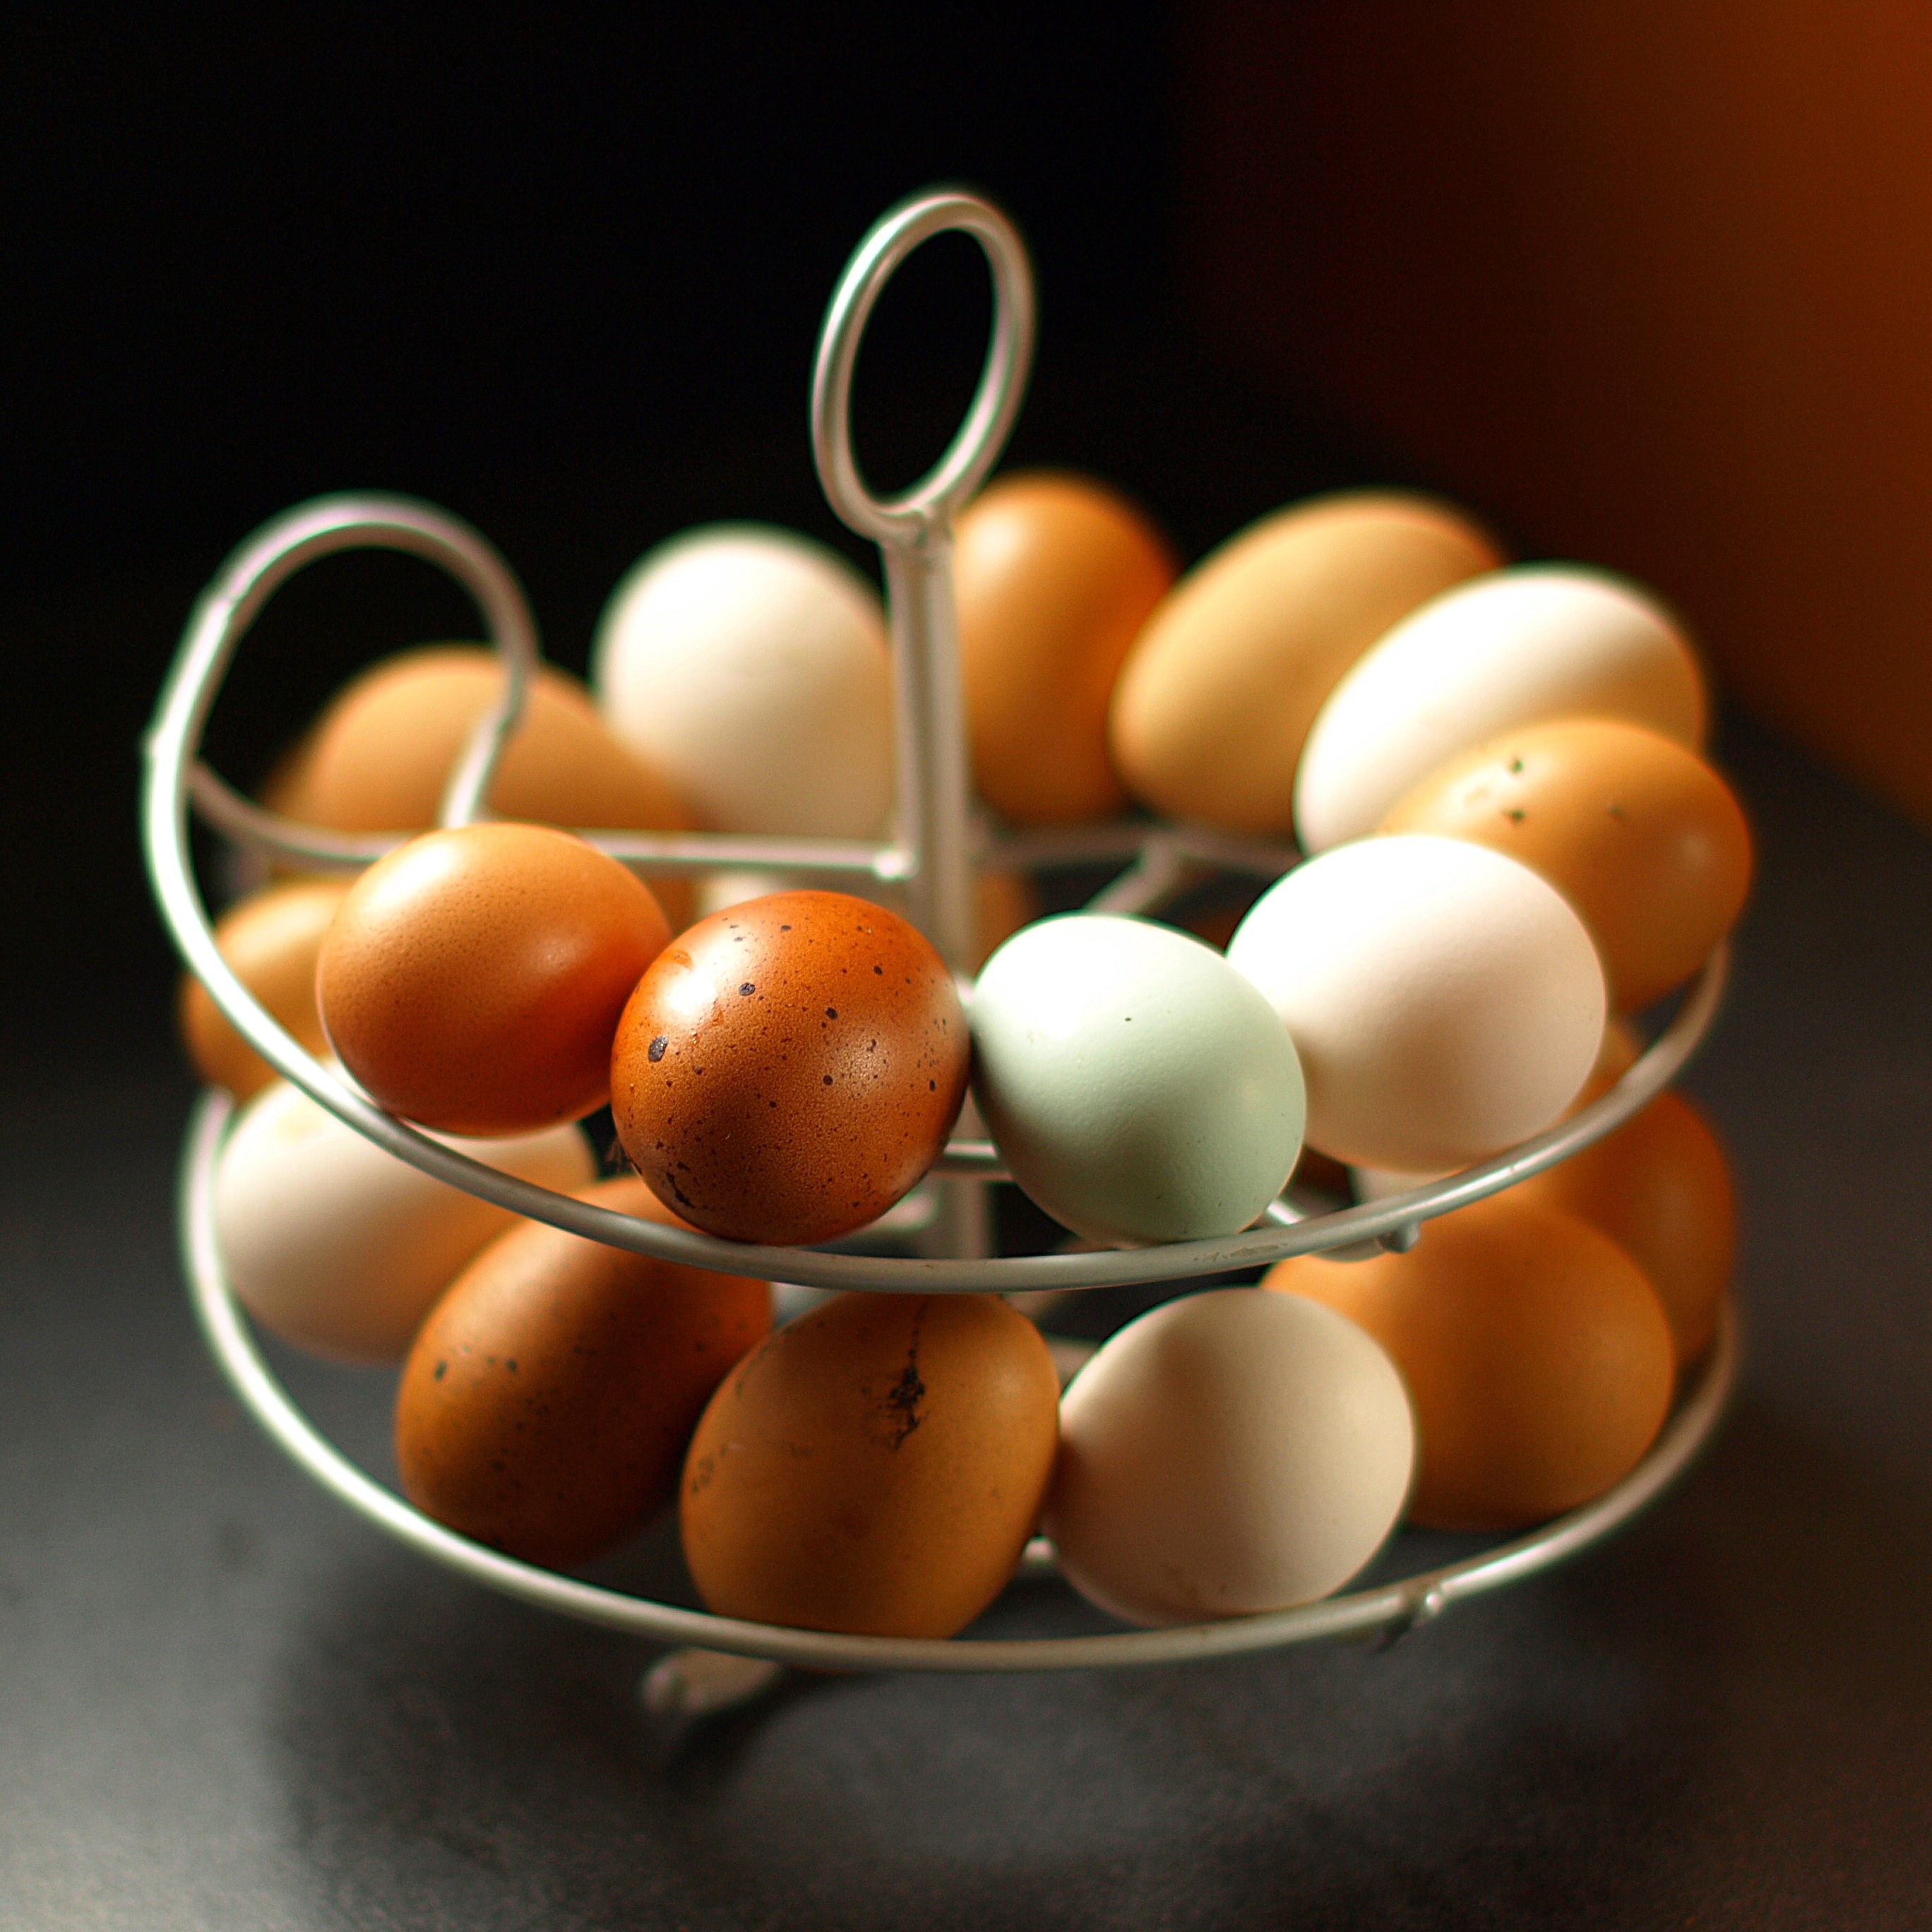 Stojak Omlet Egg Skelter pozwala Ci uszeregować jaja wedle daty złożenia